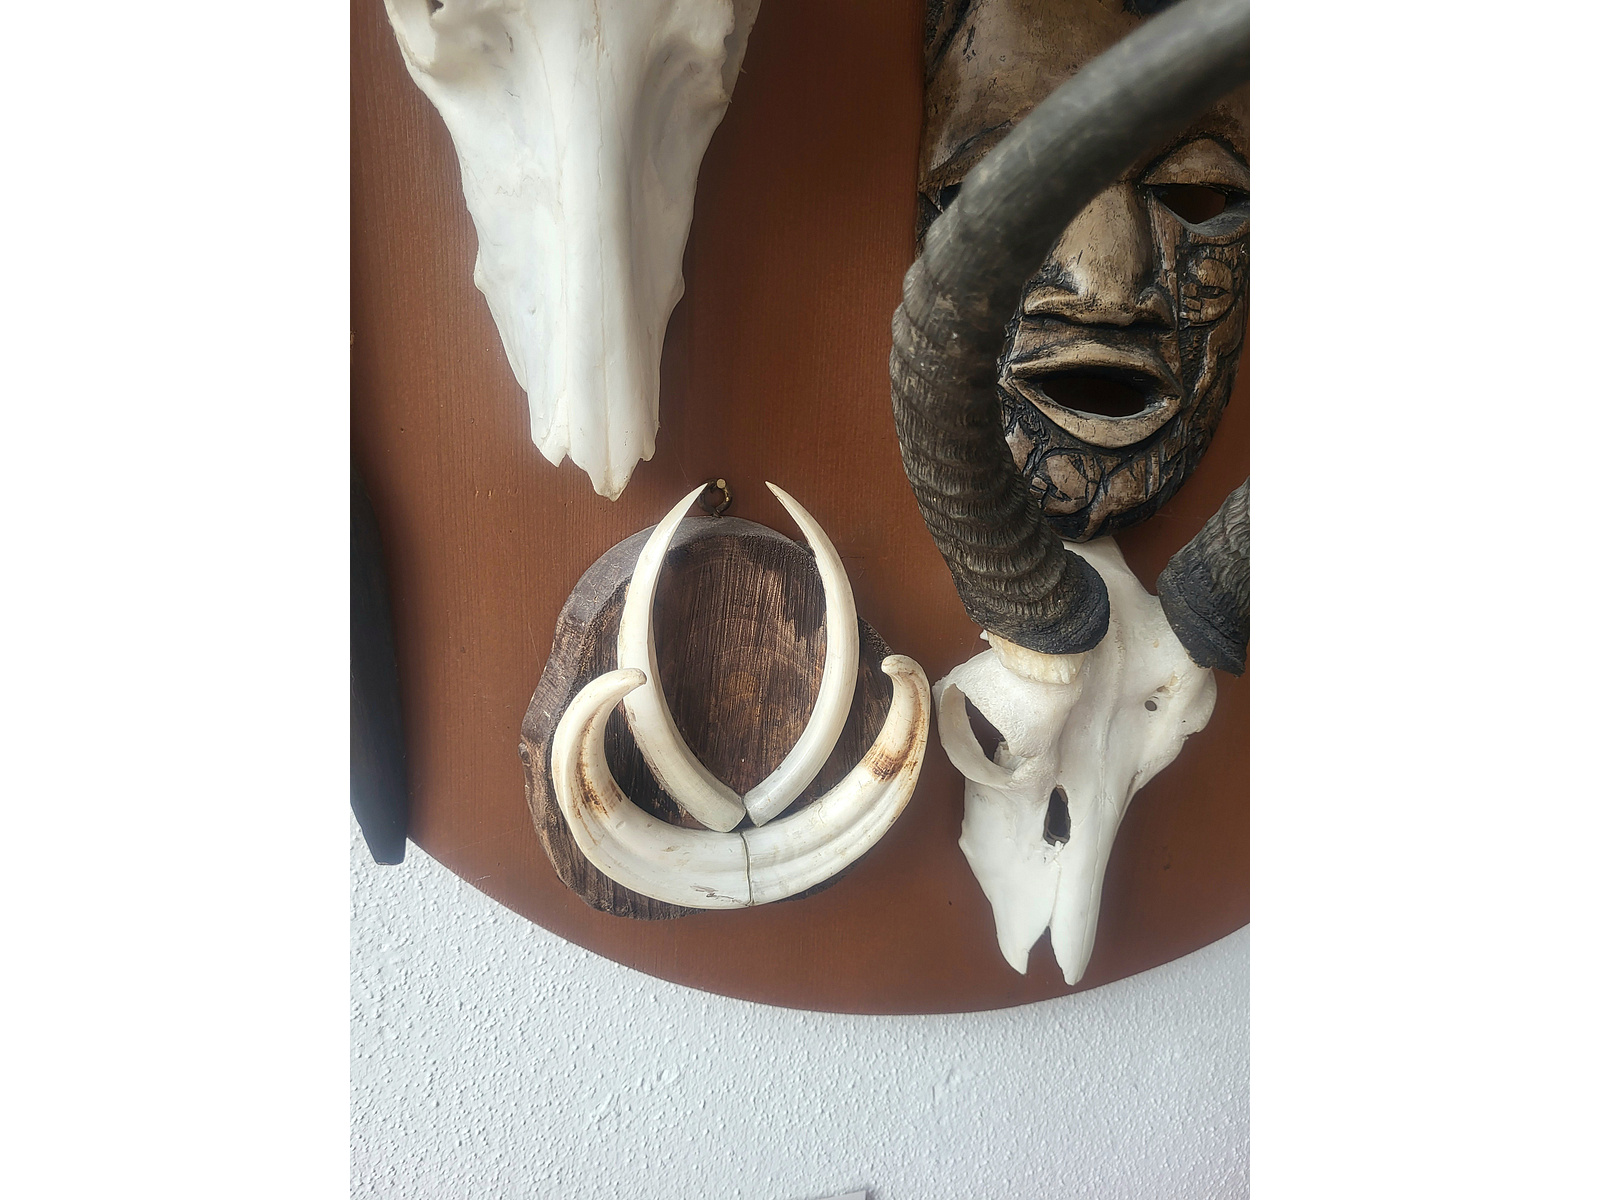 4 südafrikanische Antilopen Geweihe